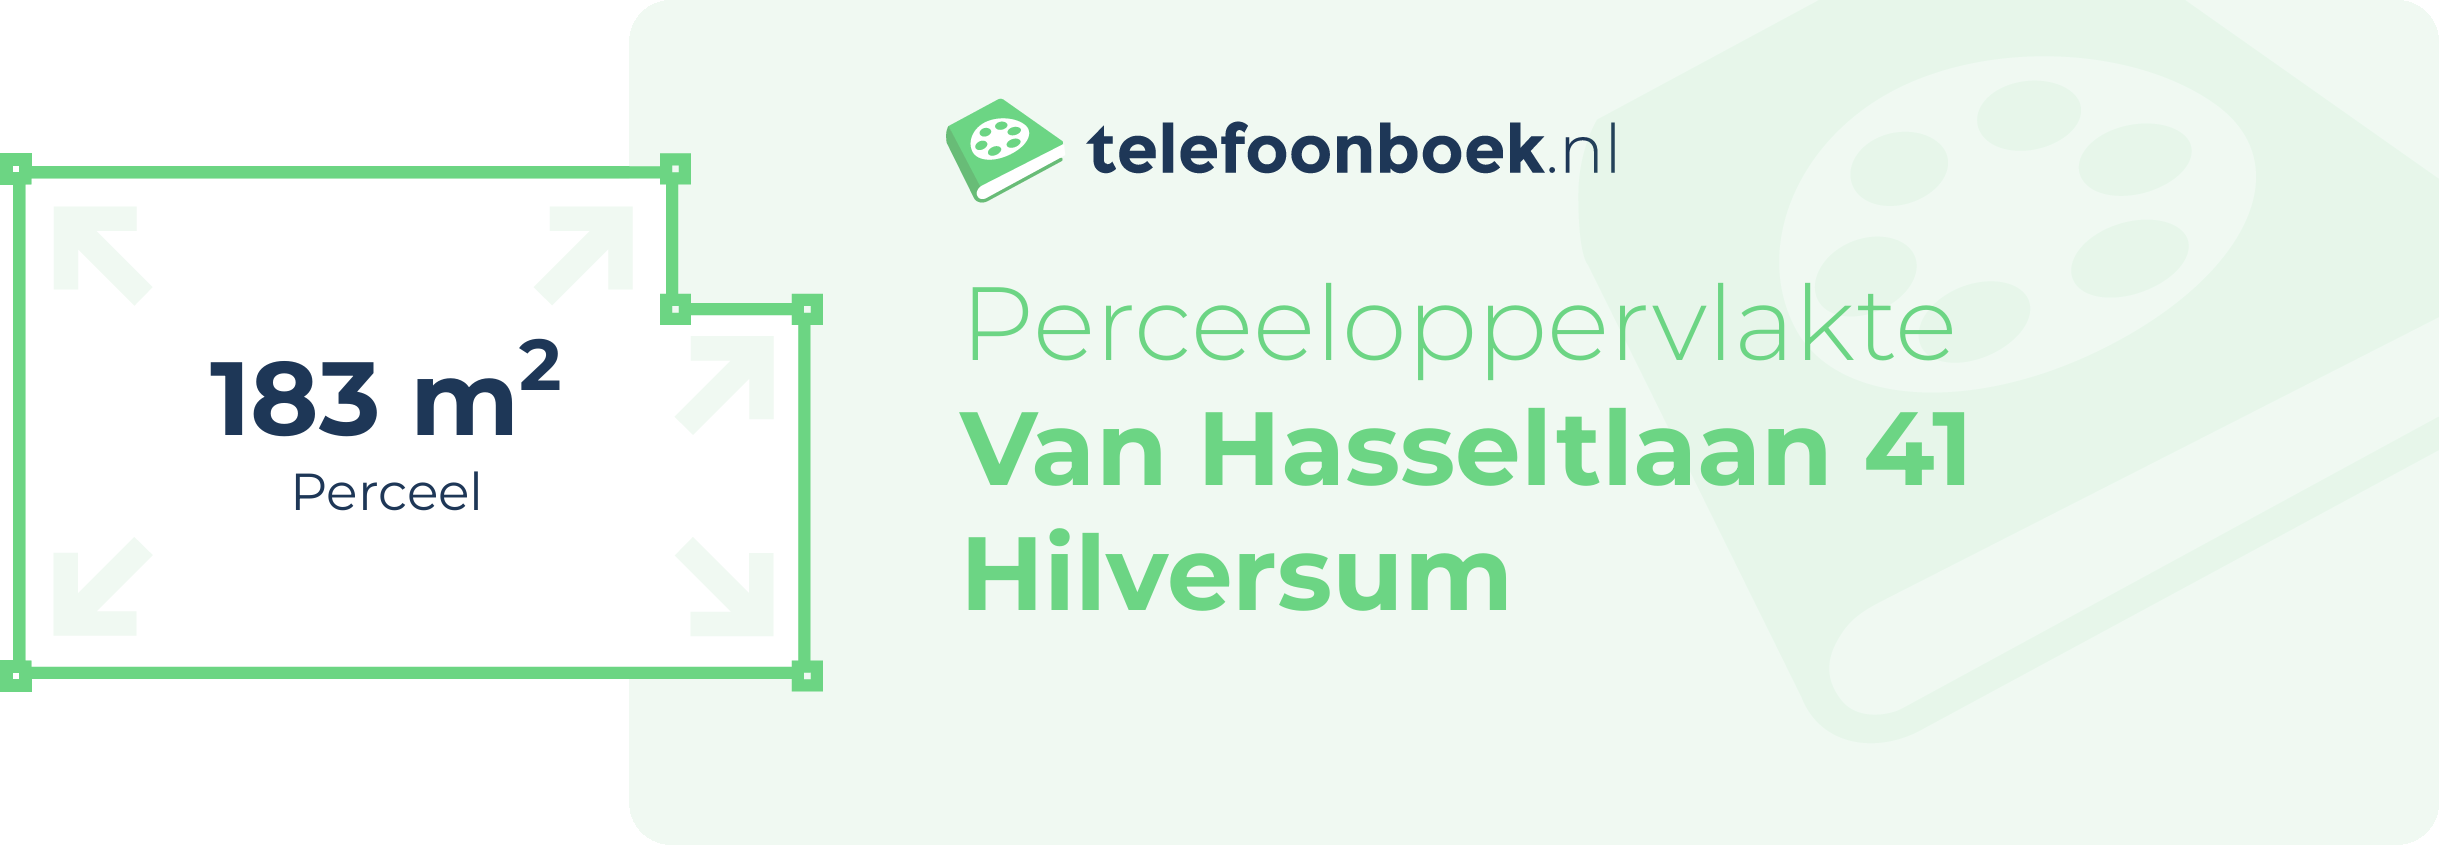 Perceeloppervlakte Van Hasseltlaan 41 Hilversum